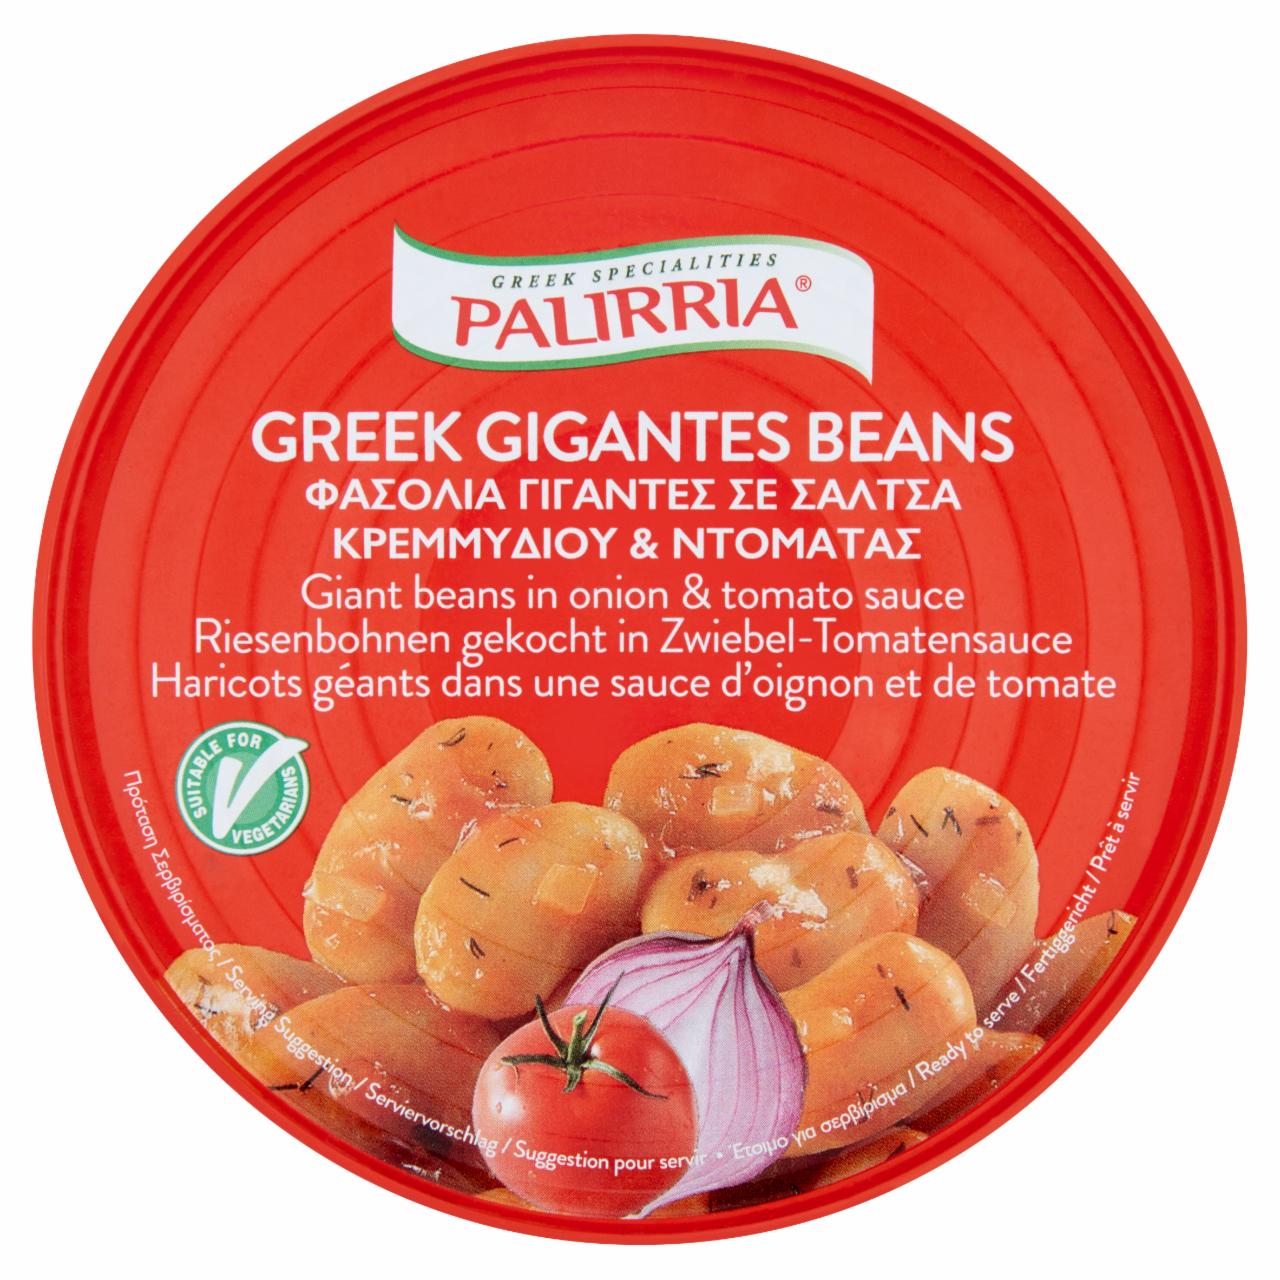 Fotografie - Greek Gigantes Beans in onion & tomato sauce Palirria